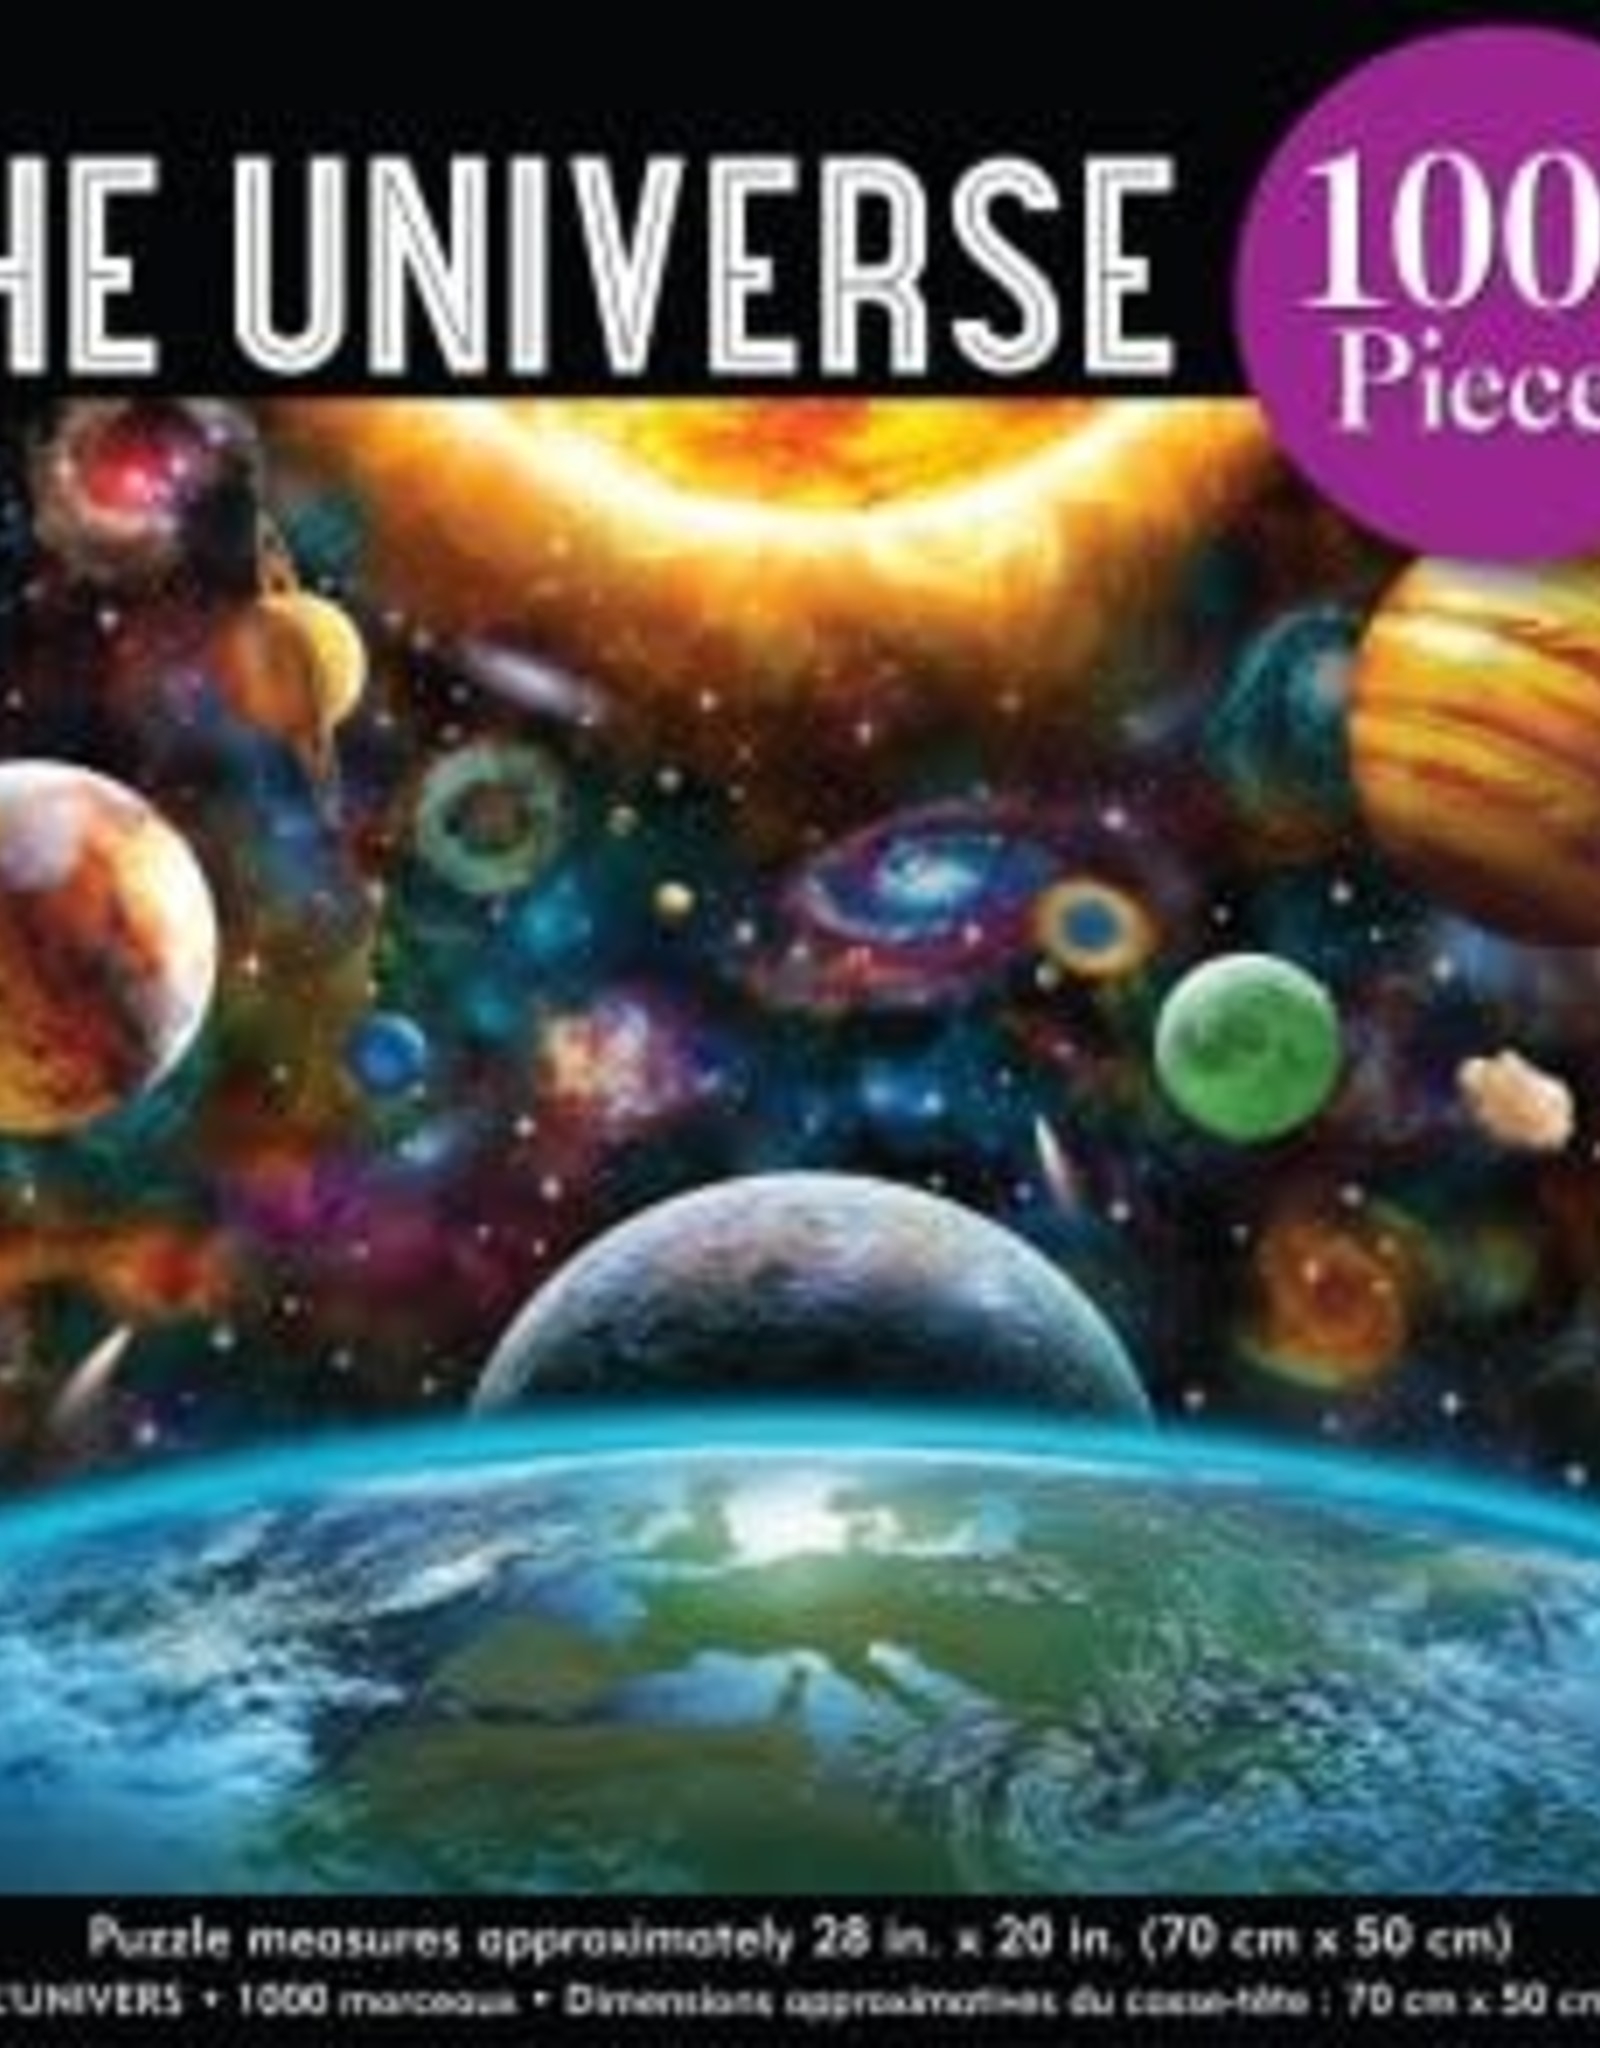 Peter Pauper Press The Universe Puzzle PPP - 1000 p